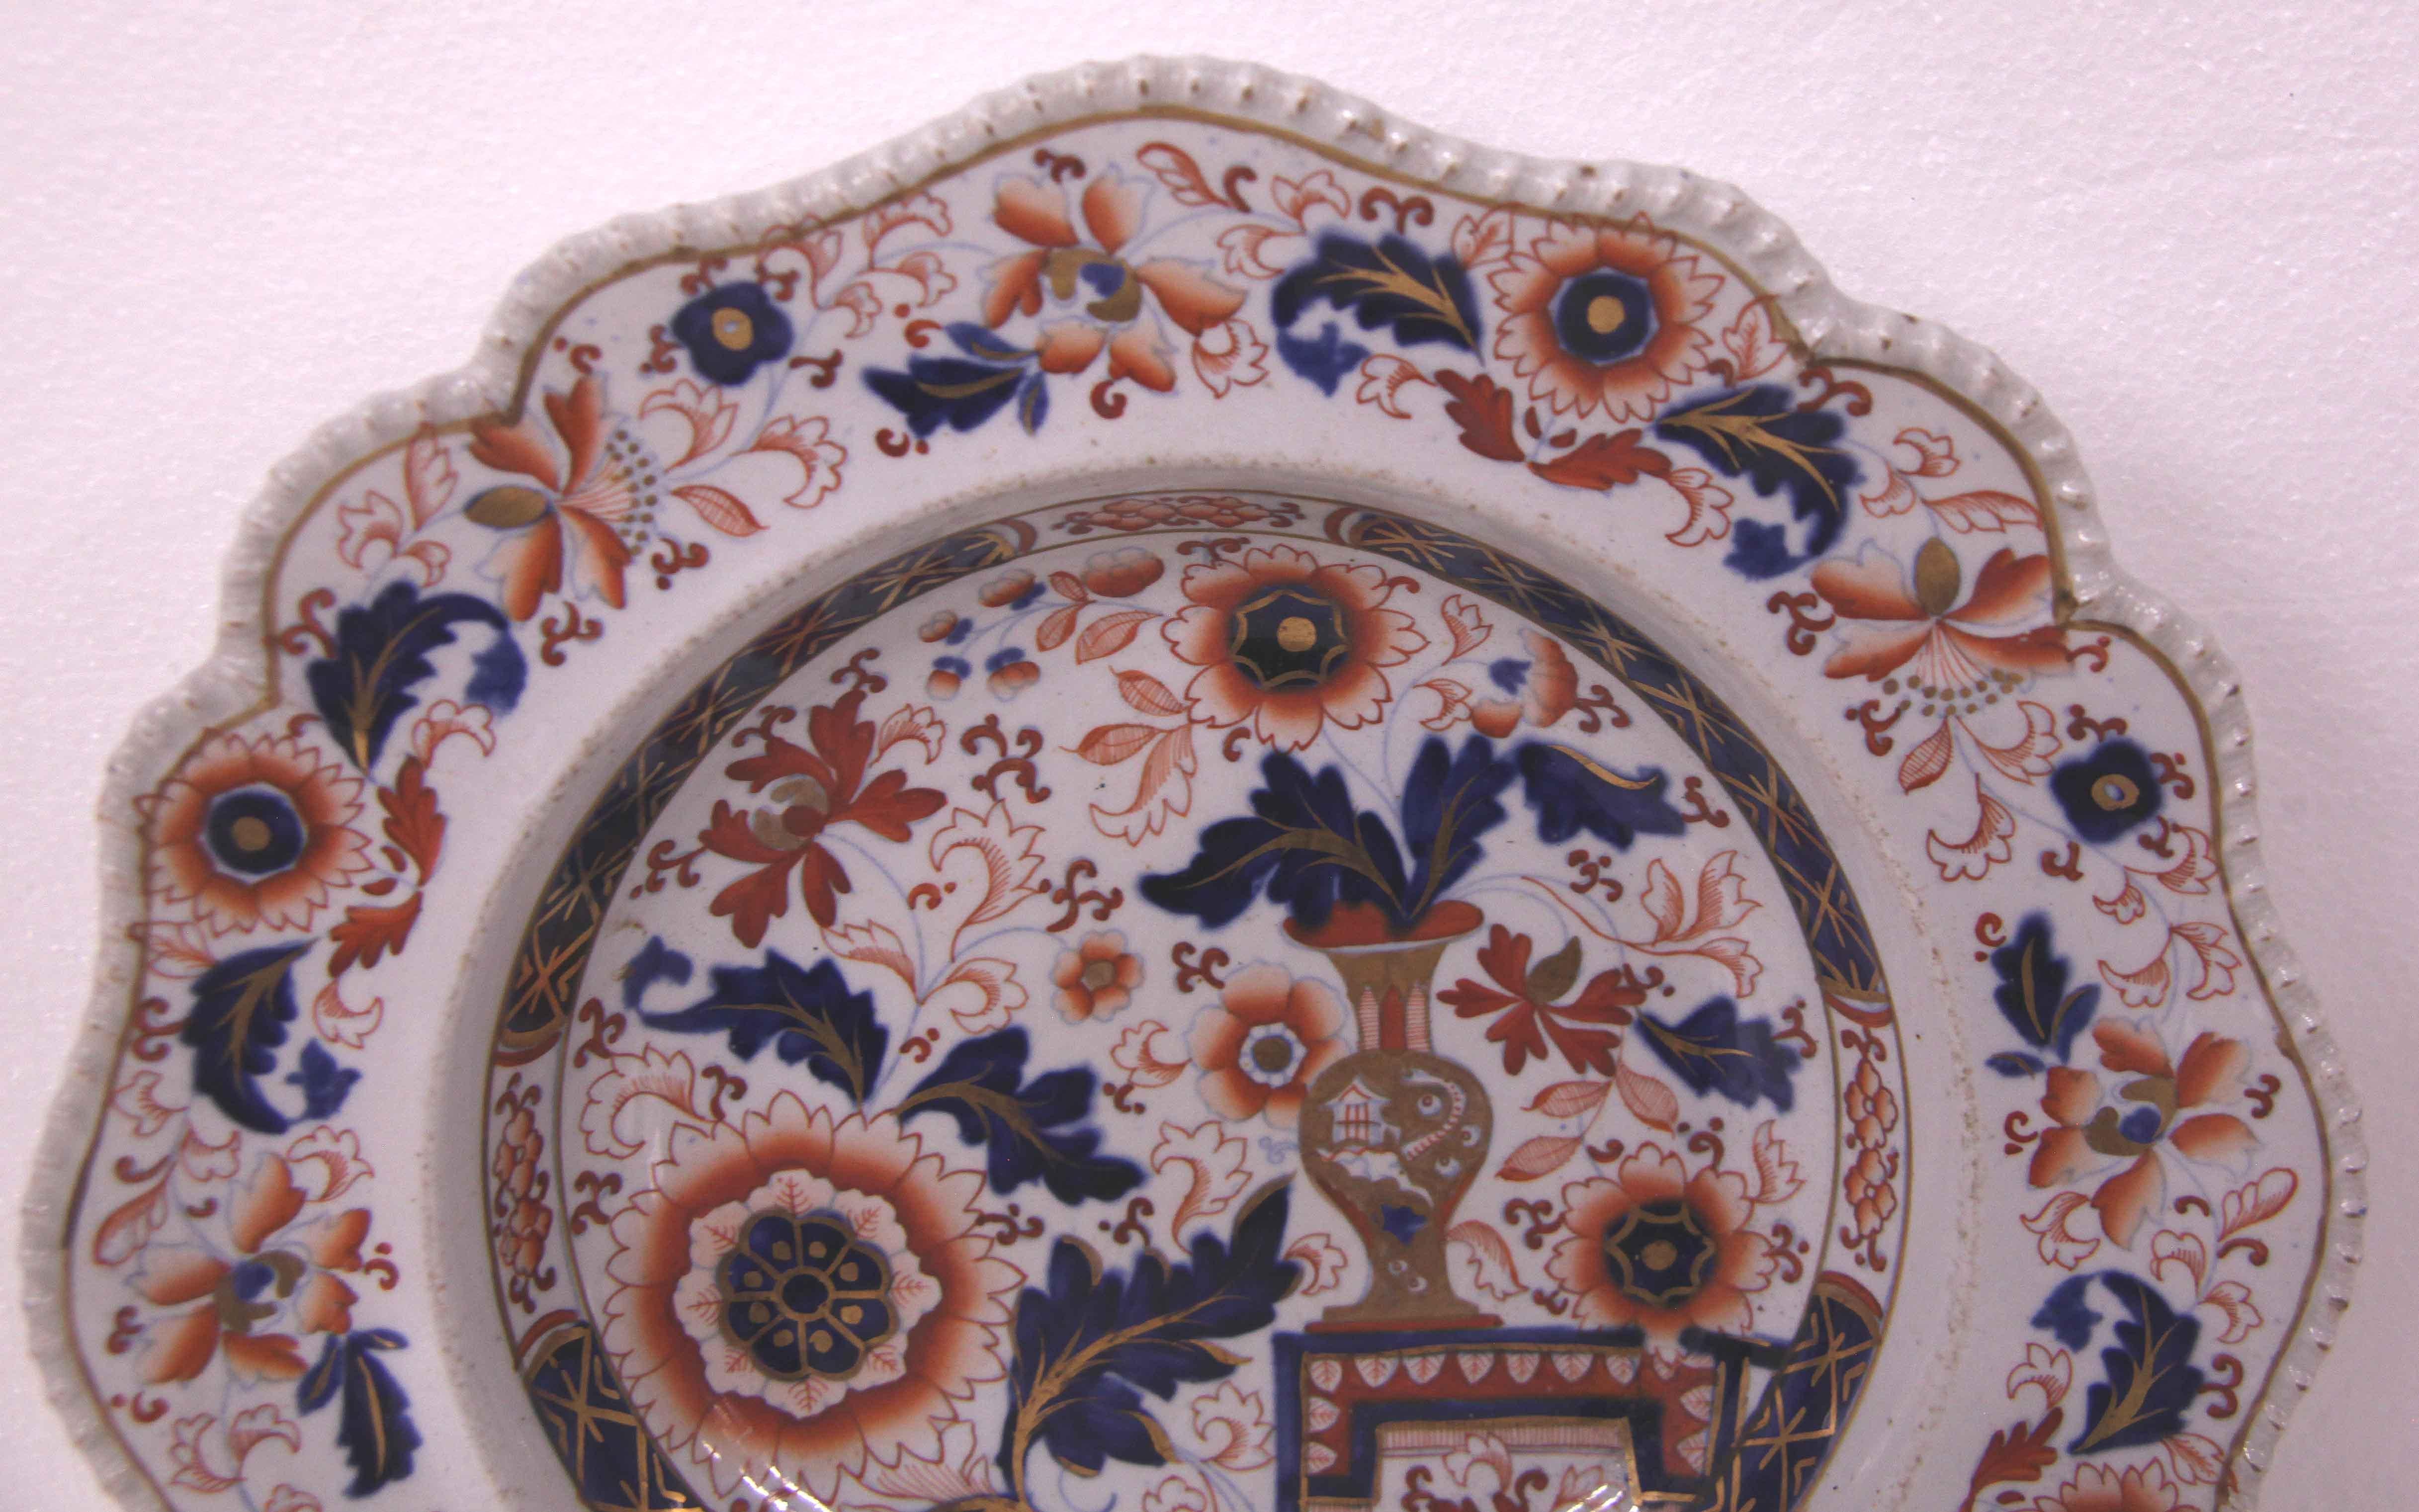 Paire d'assiettes à soupe en grès anglais, avec un bord festonné et perlé, la bordure présente un motif répétitif de fleurs et de feuillages stylisés, l'intérieur de l'assiette présente une variété de fleurs et de feuillages et un vase doré posé sur